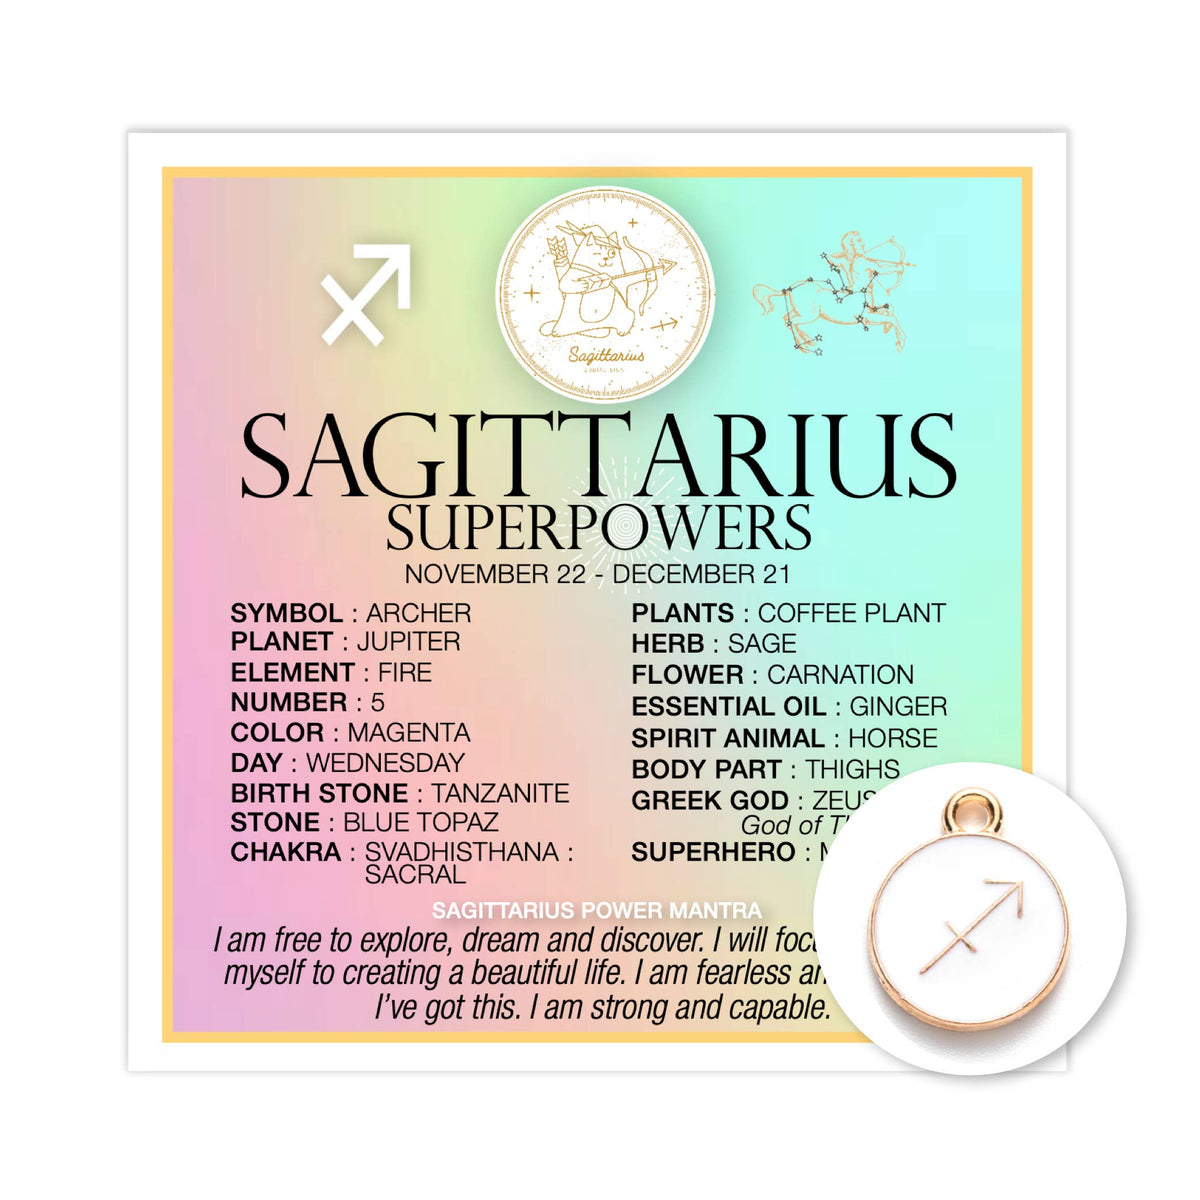 SAGITTARIUS SUPERPOWERS